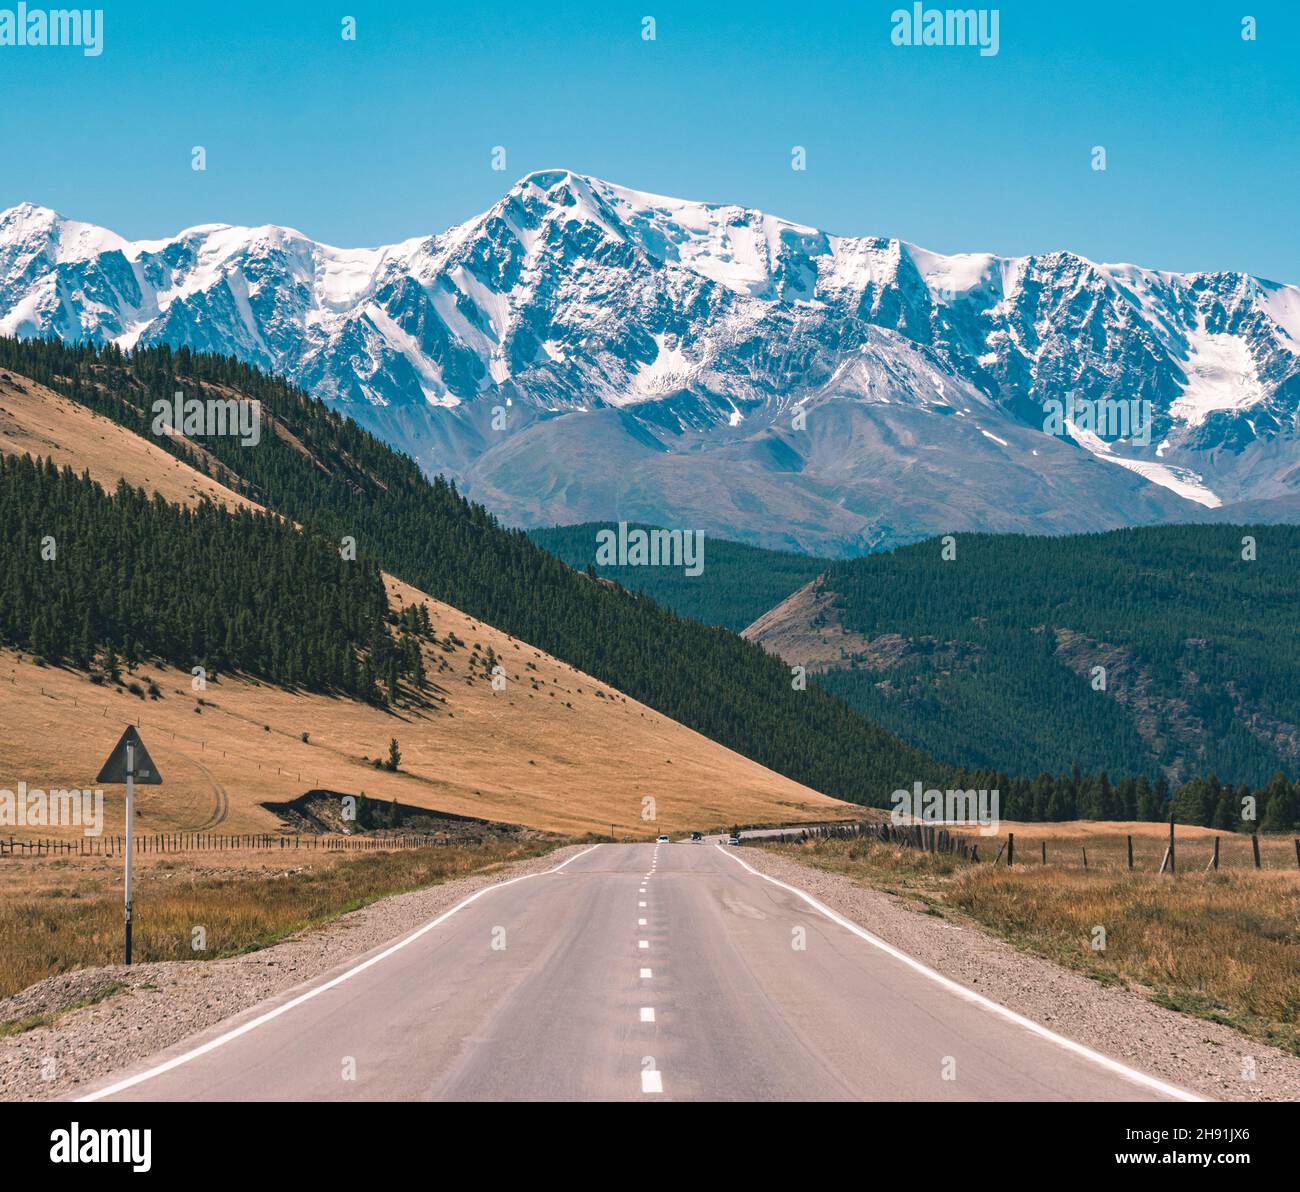 Route asphaltée vide devant d'immenses montagnes majestueuses avec des sommets enneigés.Magnifique paysage de la région de l'Altay, Russie. Banque D'Images